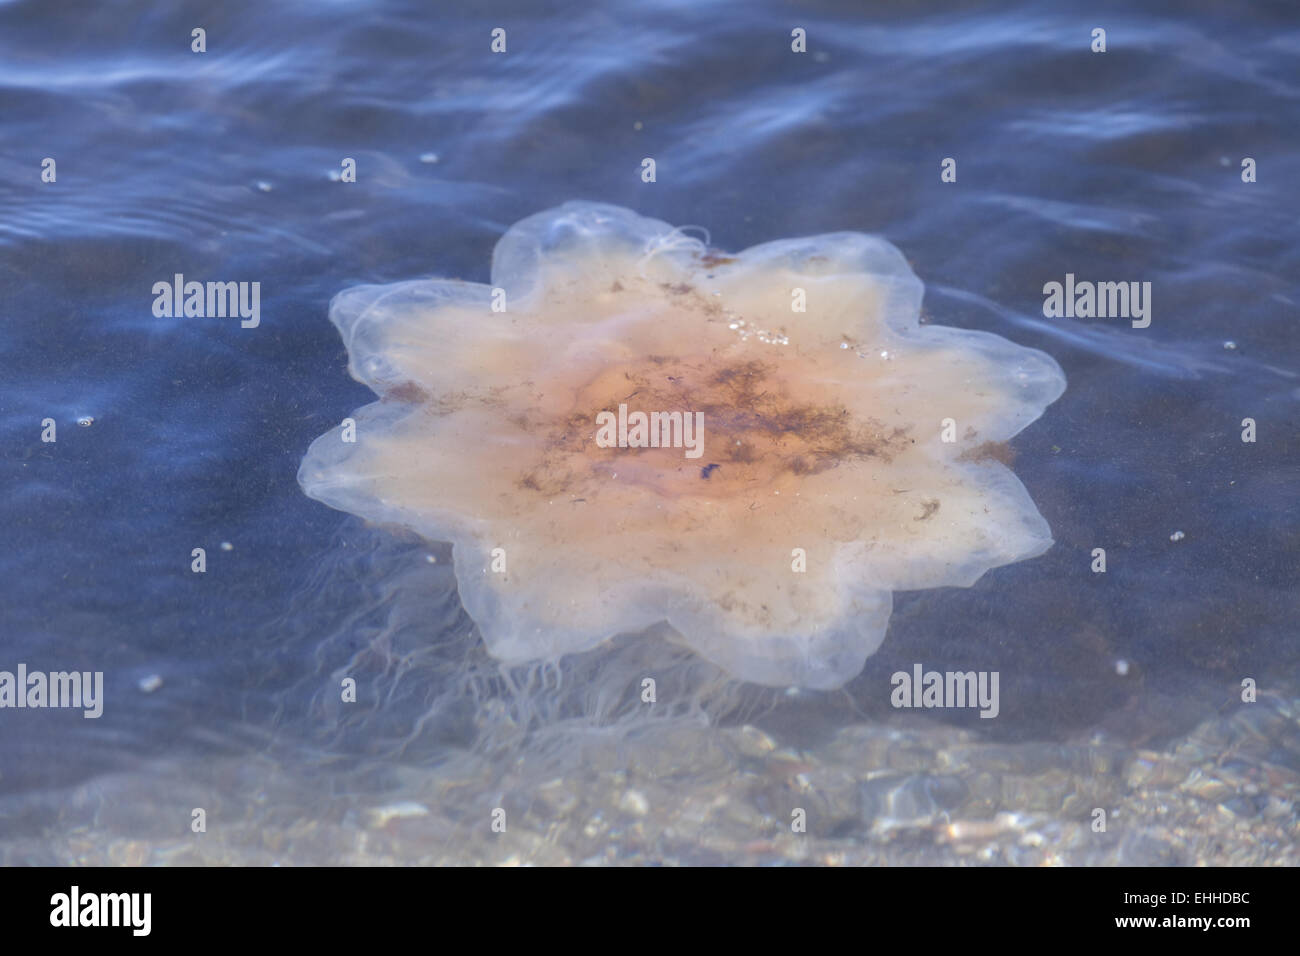 Yellow mane jellyfish (Cyanea capillata) Stock Photo